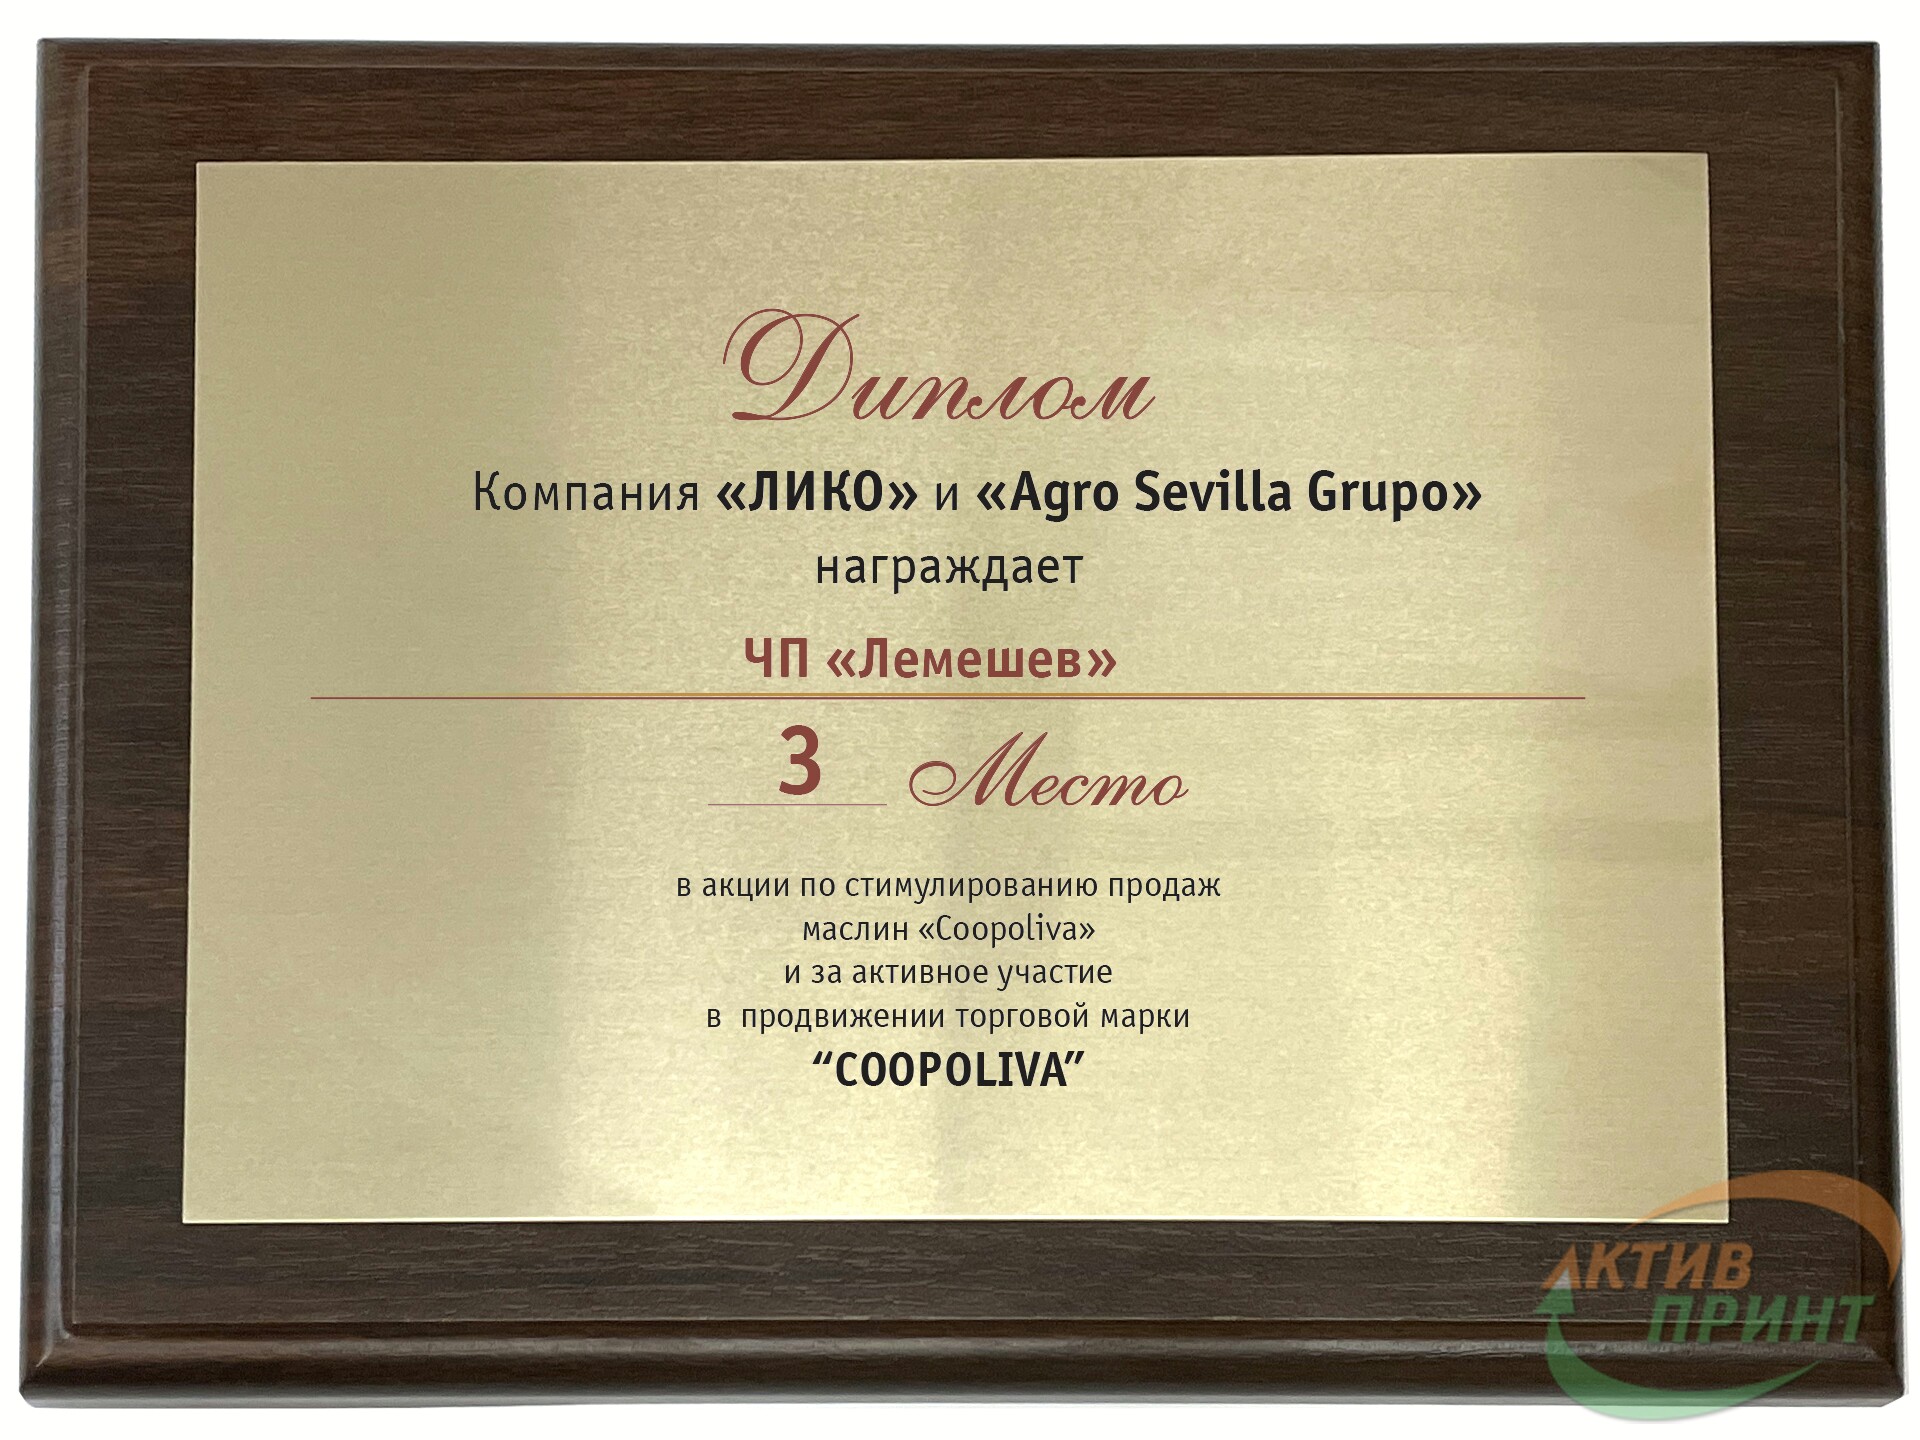 Приклад сертифіката на металі і дерев'яній підкладці